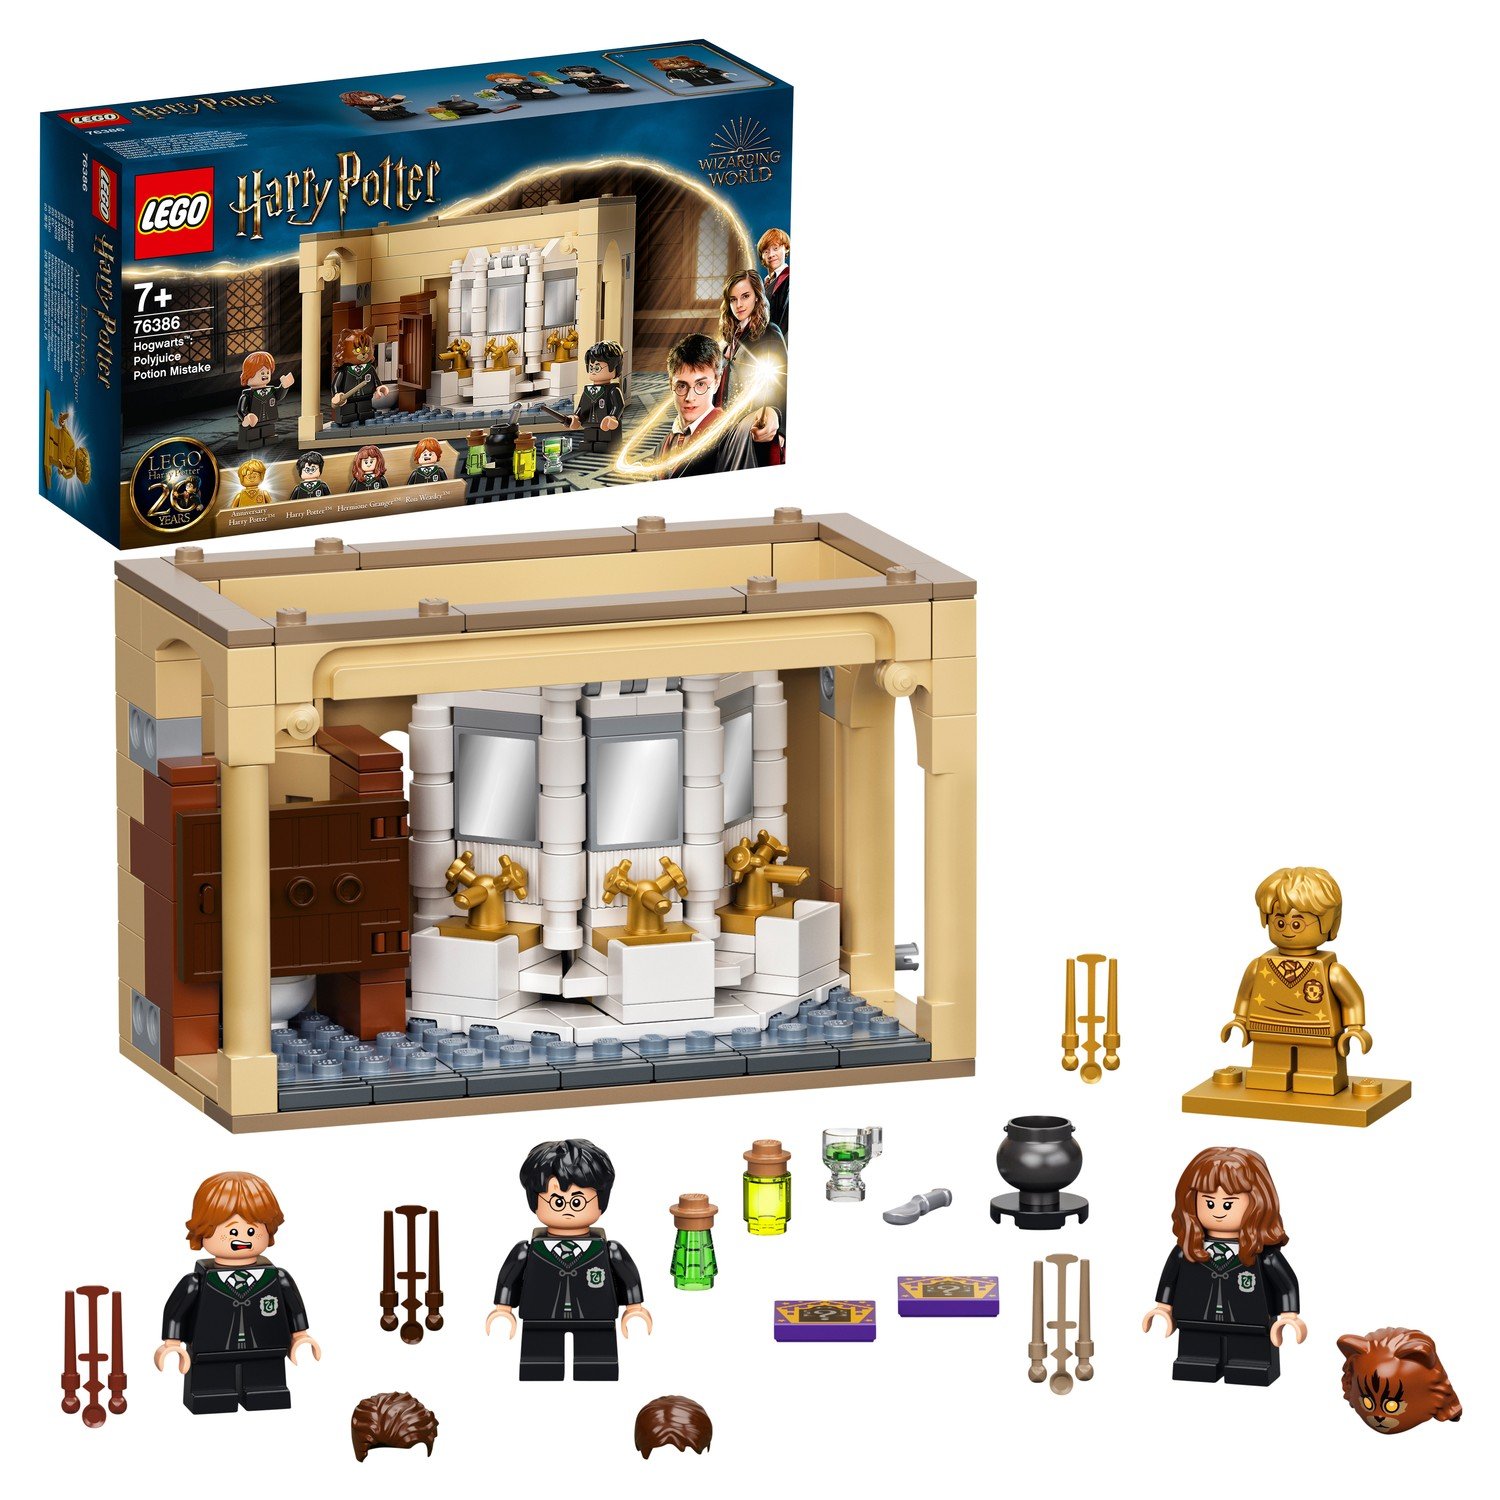 Конструктор LEGO Harry Potter 76386 Хогвартс: ошибка с оборотным зельем конструктор panawealth harry potter 6068 министерство магии на 990 дет